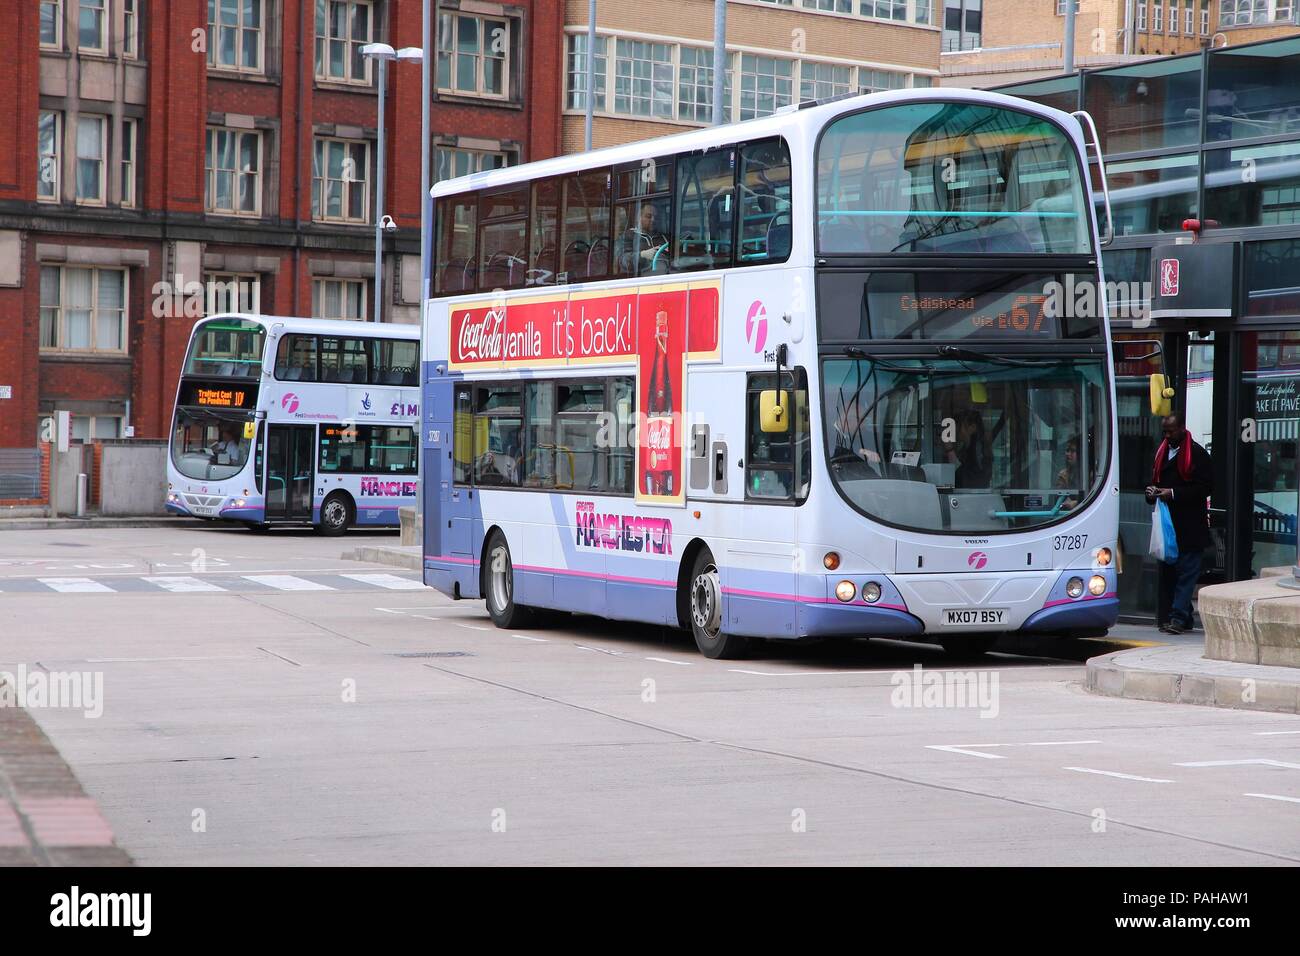 MANCHESTER, Regno Unito - 23 aprile: persone ride FirstGroup autobus della città il 23 aprile 2013 a Manchester, UK. FirstGroup impiega 124.000 persone. Foto Stock